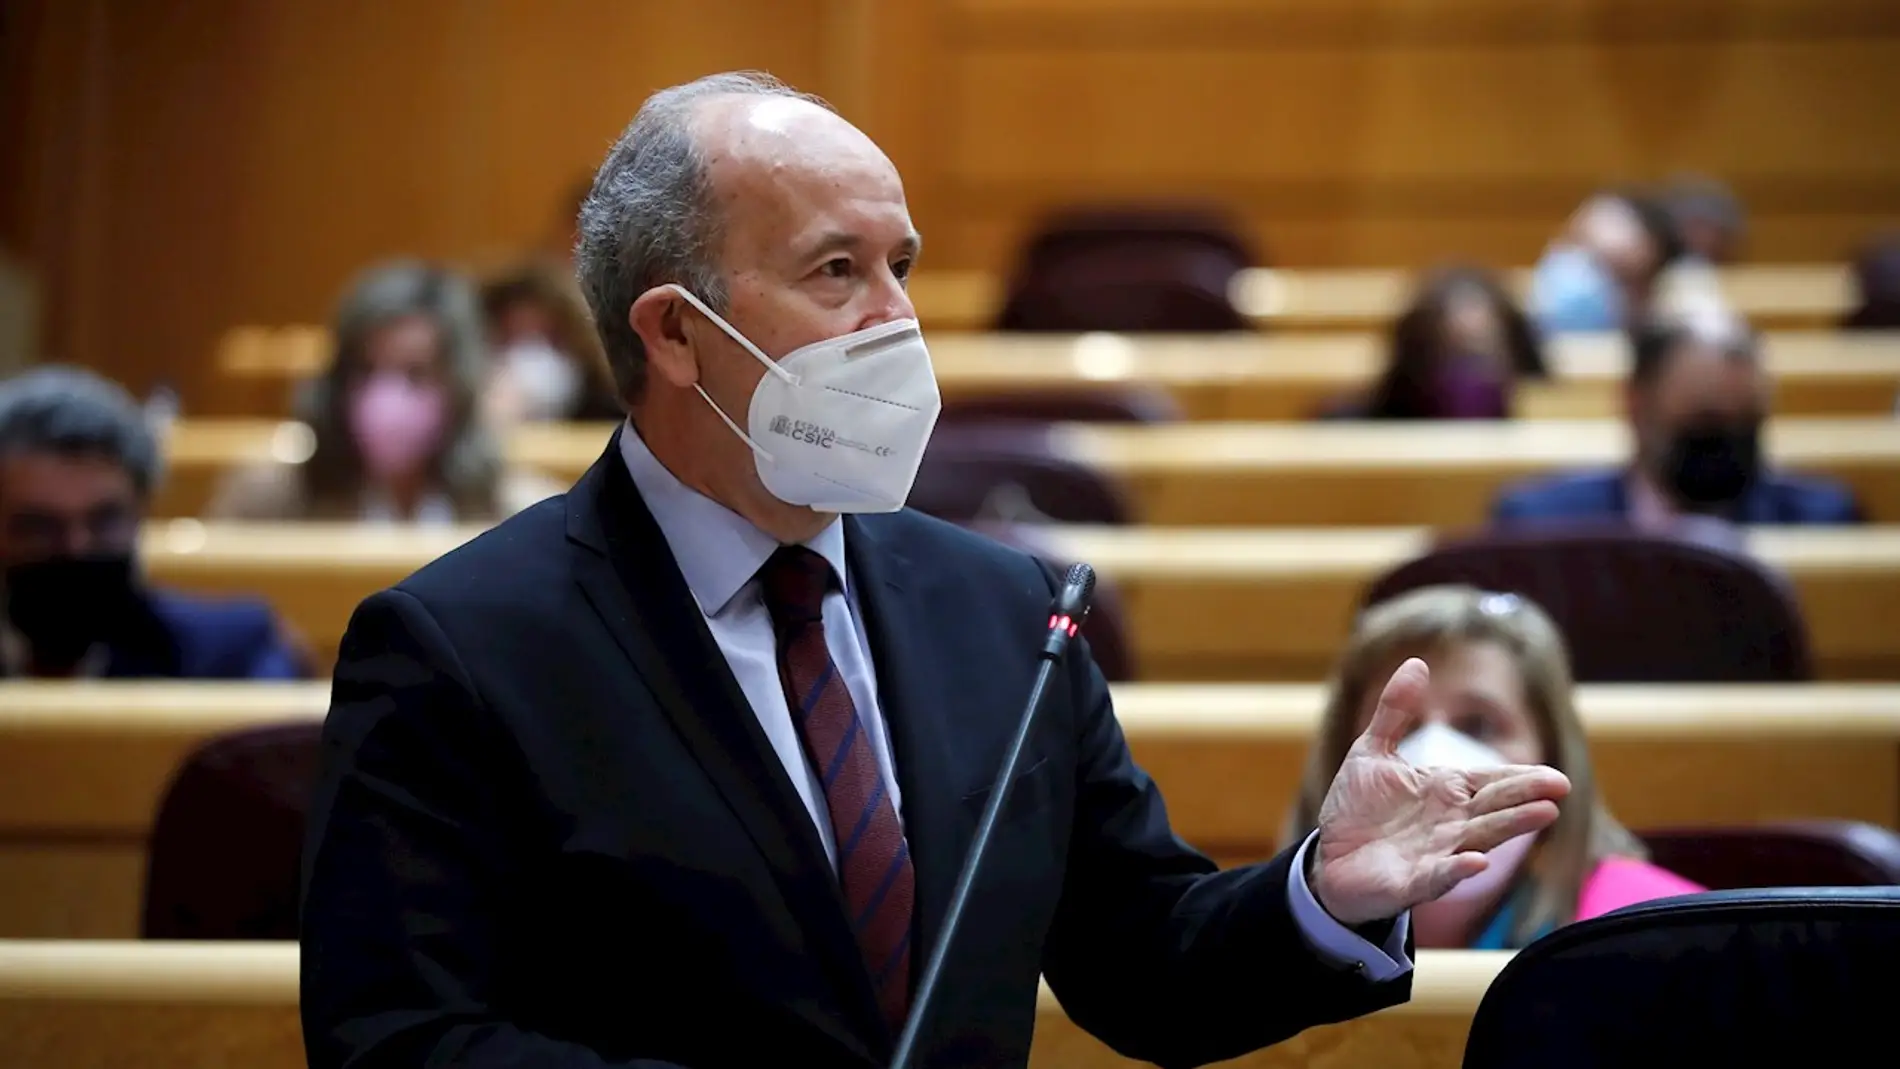 El ministro de Justicia, Juan Carlos Campo